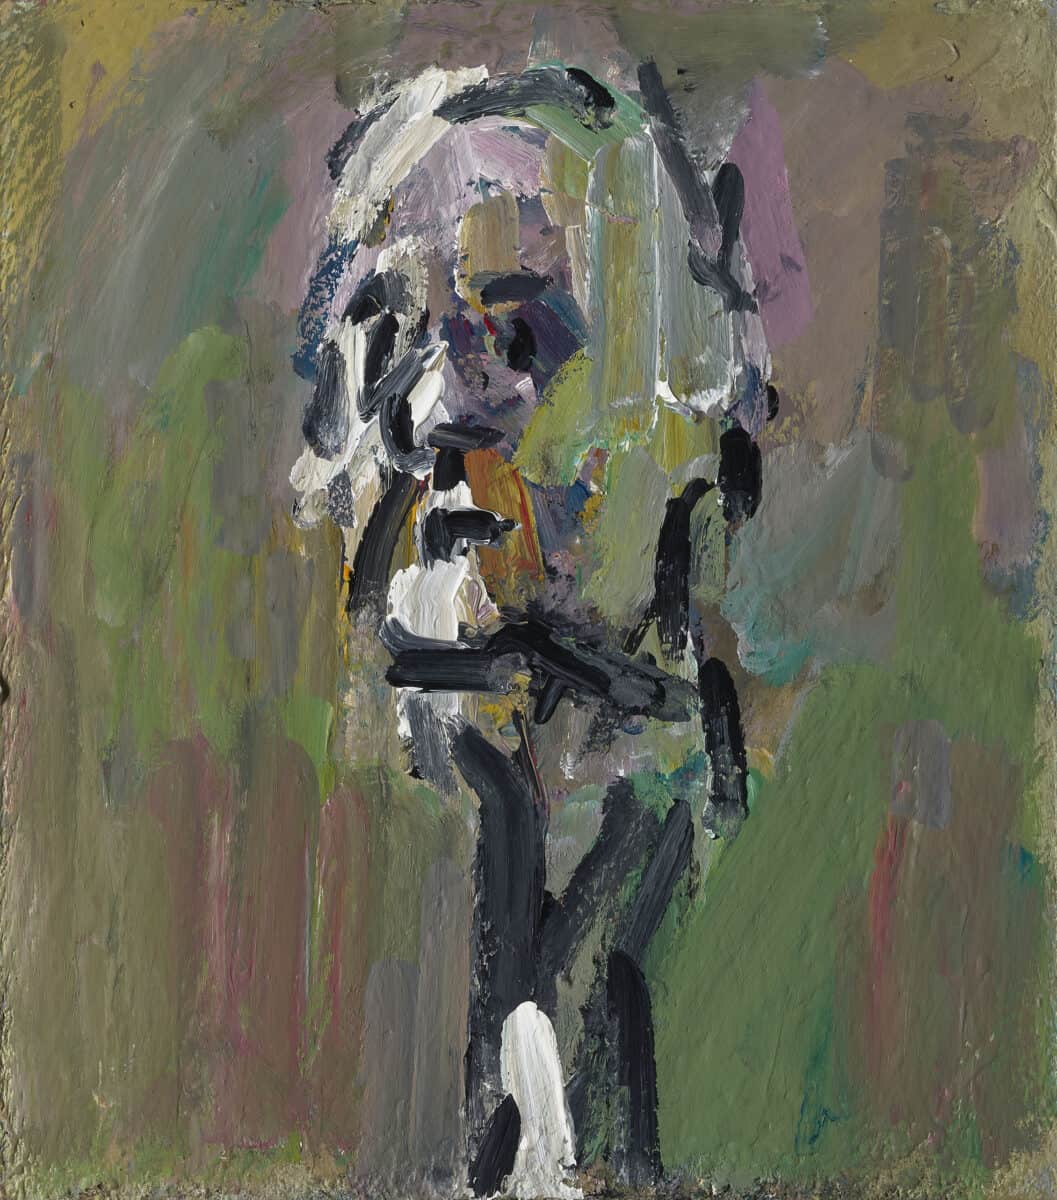  Auerbach, Frank Self Portrait III, 2021 Acrylic on board 23 3/4 x 21 in 60.3 x 53.3 cm © Frank Auerbach, Courtesy Geoffrey Parton Photo: Prudence Cuming Associates Ltd. Courtesy Gagosian